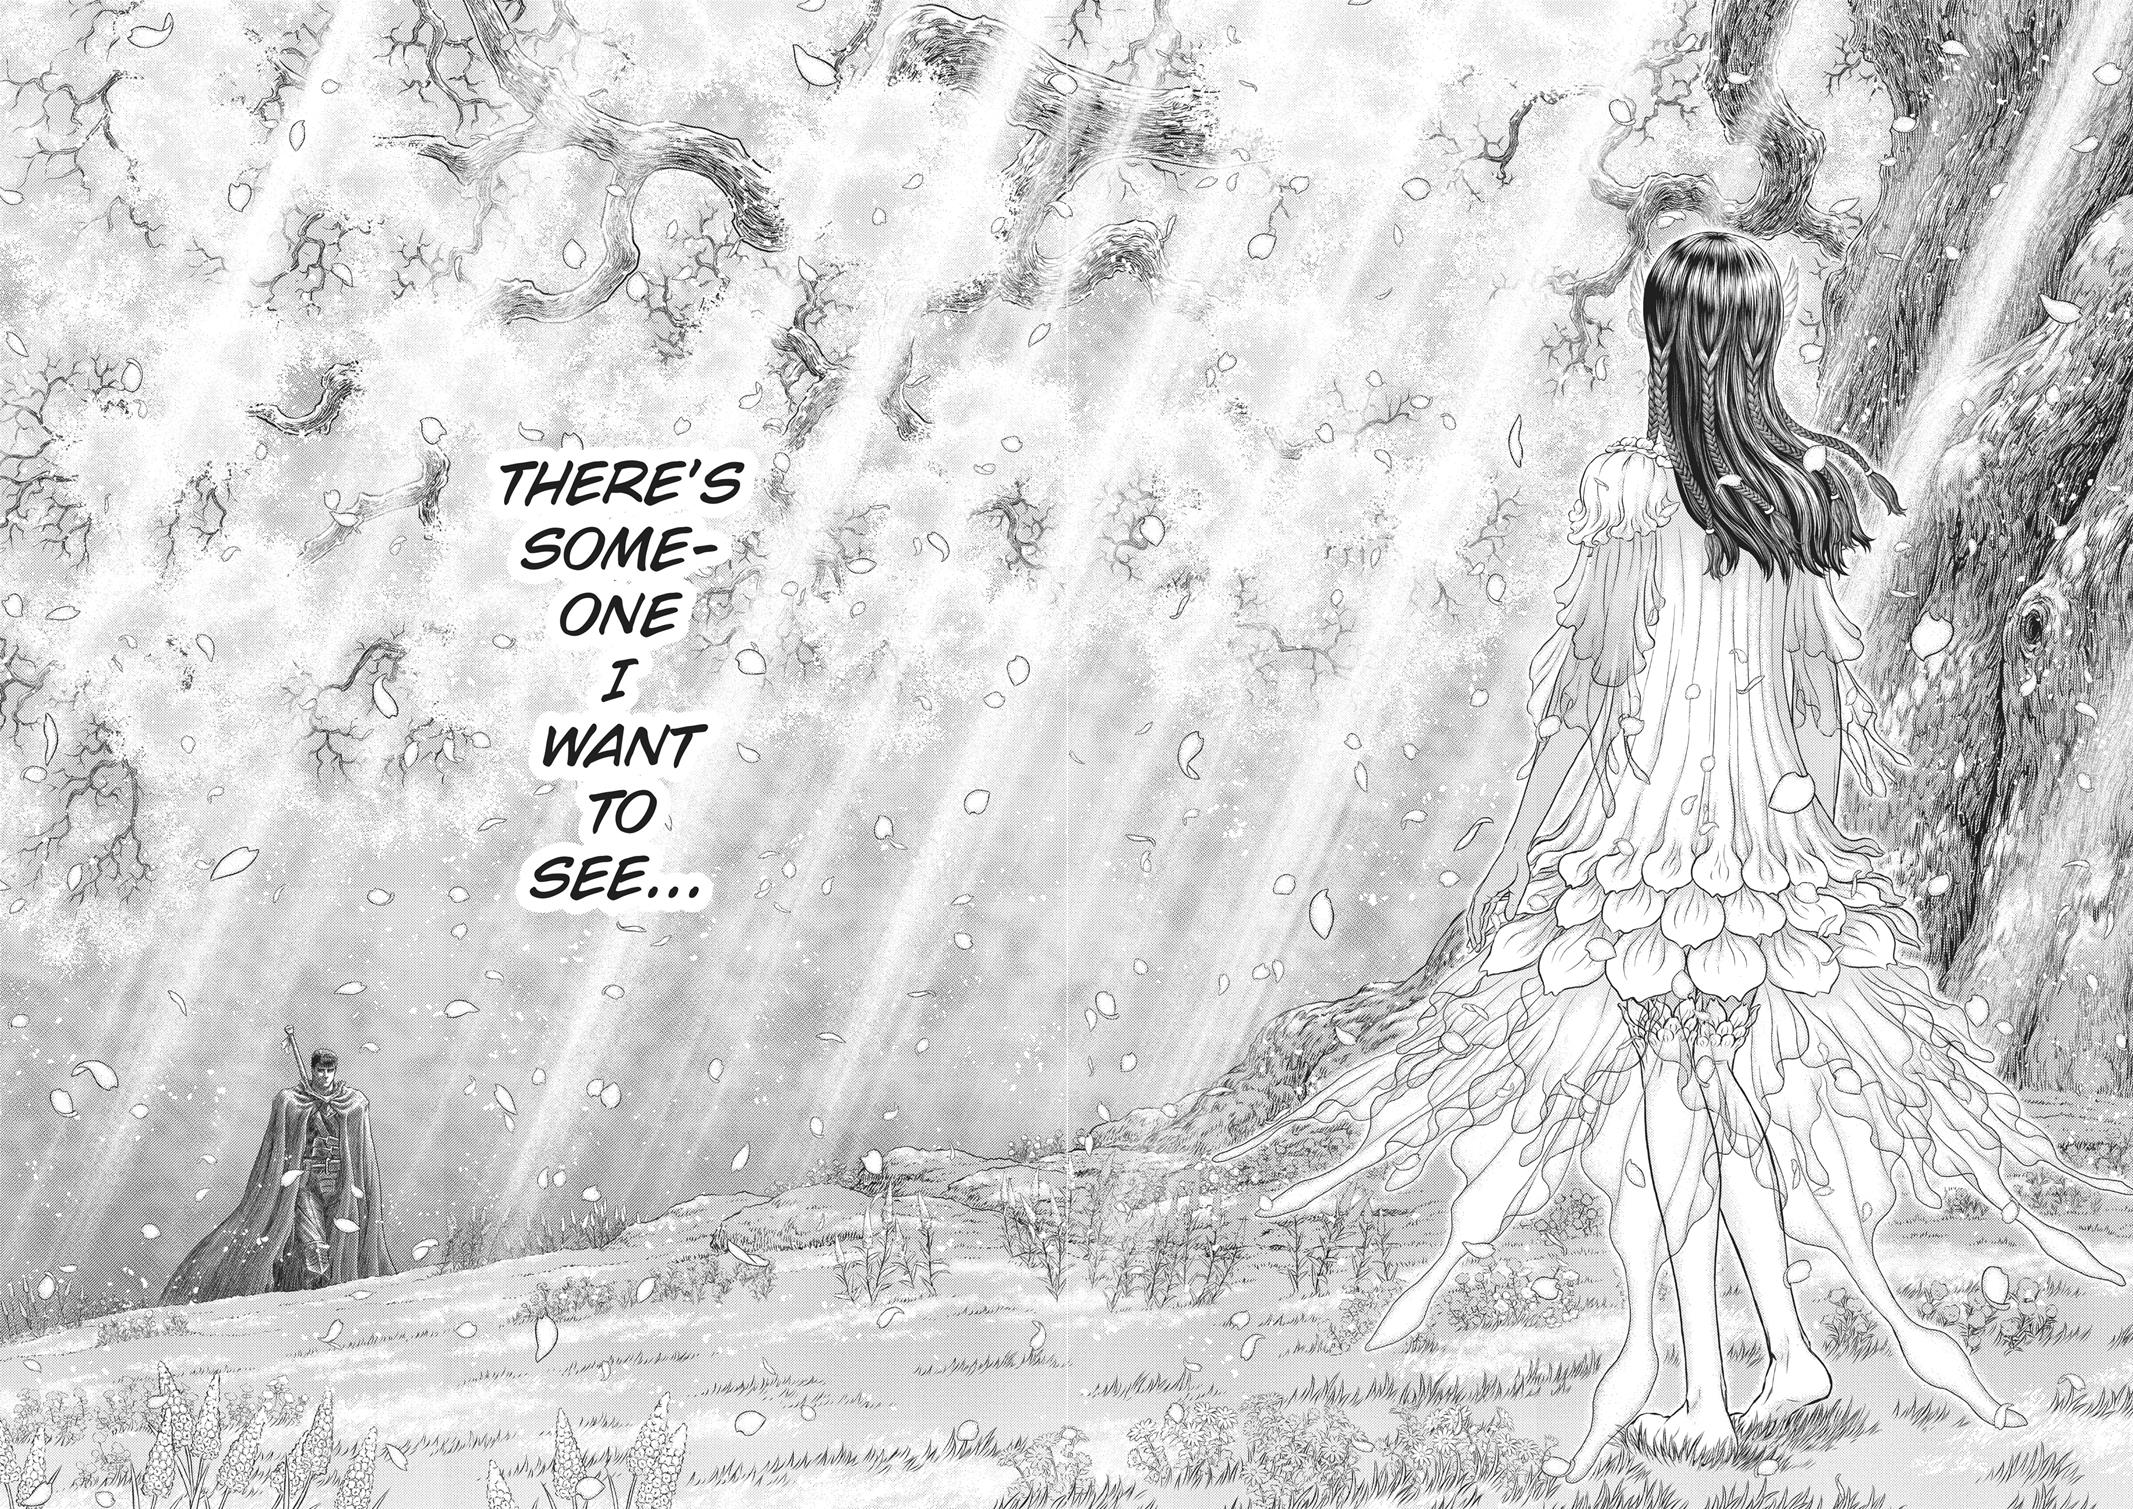 Berserk Manga Chapter 355 image 13